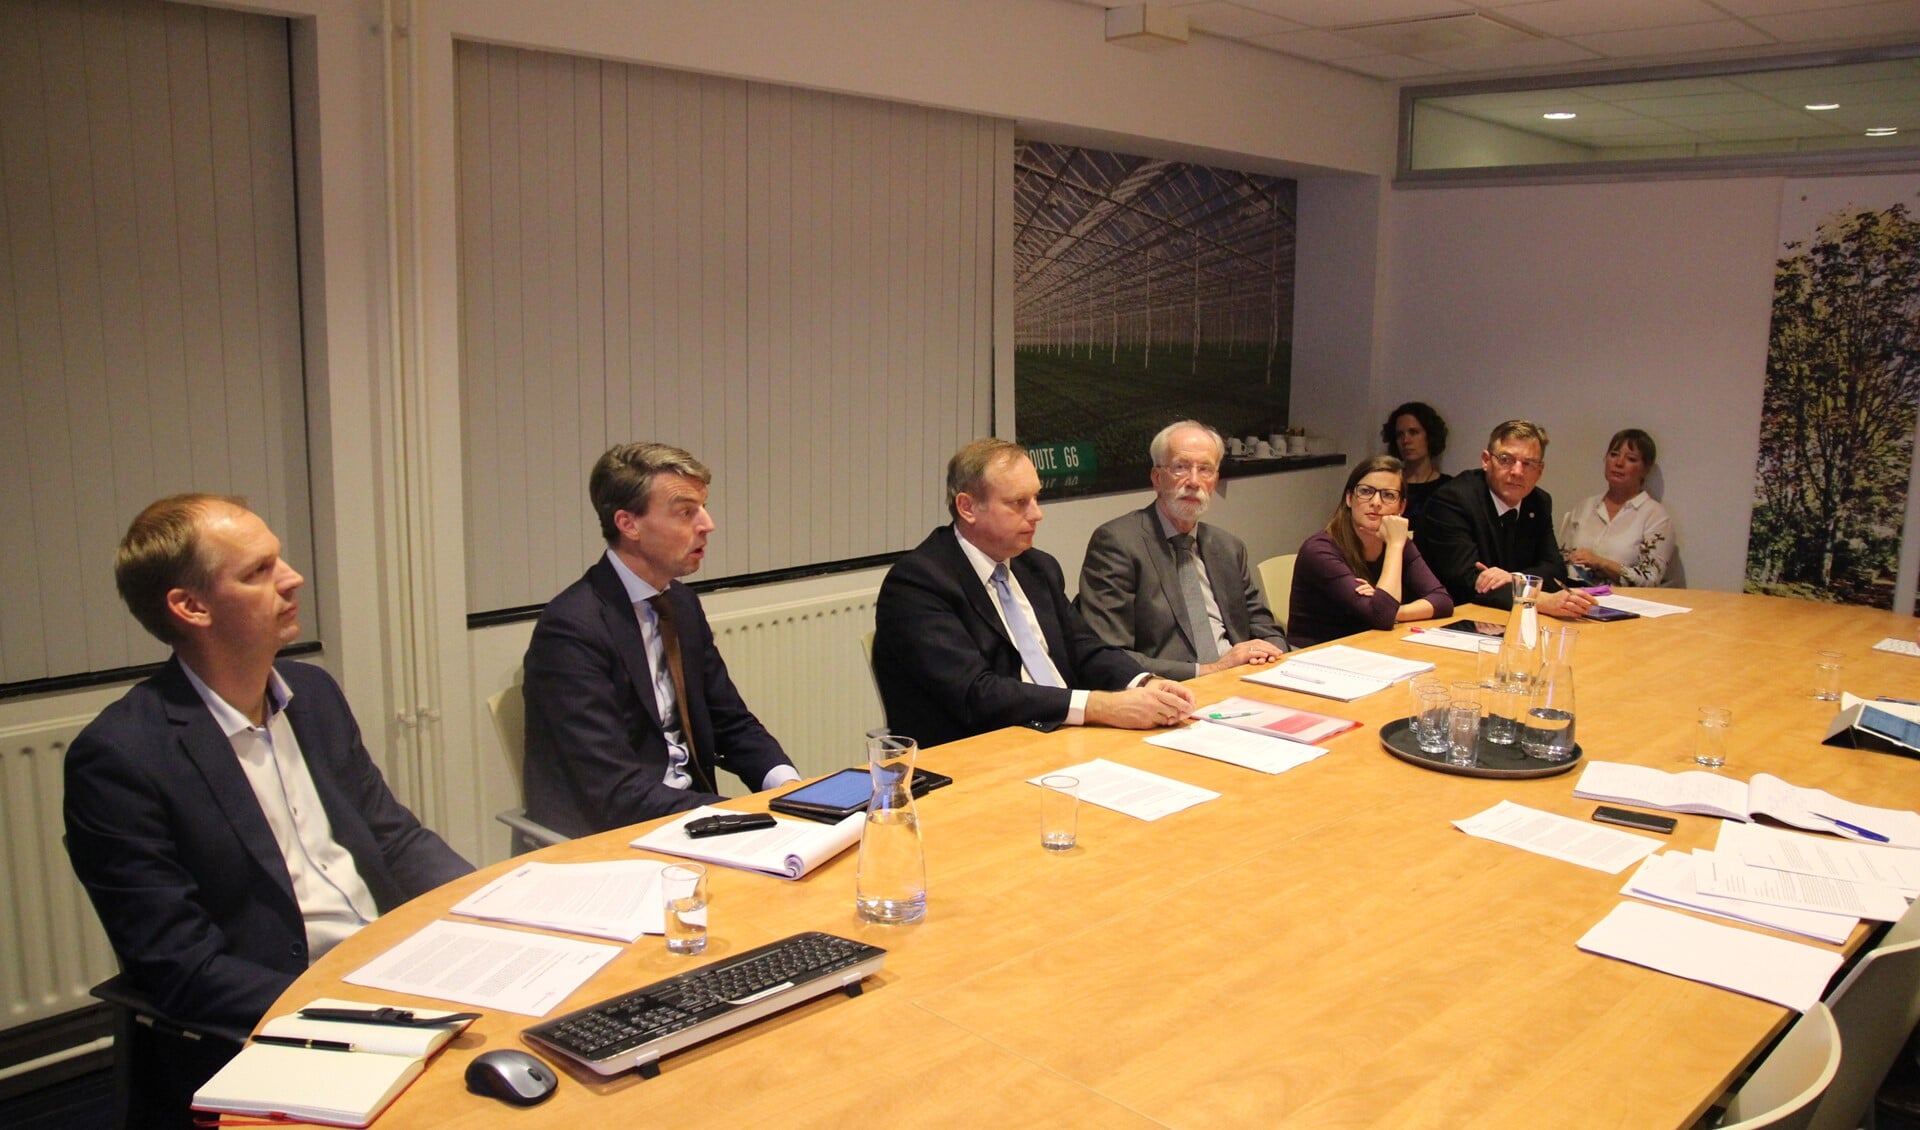 De onderzoekers (links) en leden van de begeleidingscommissie tijdens de presentatie van het rapport.